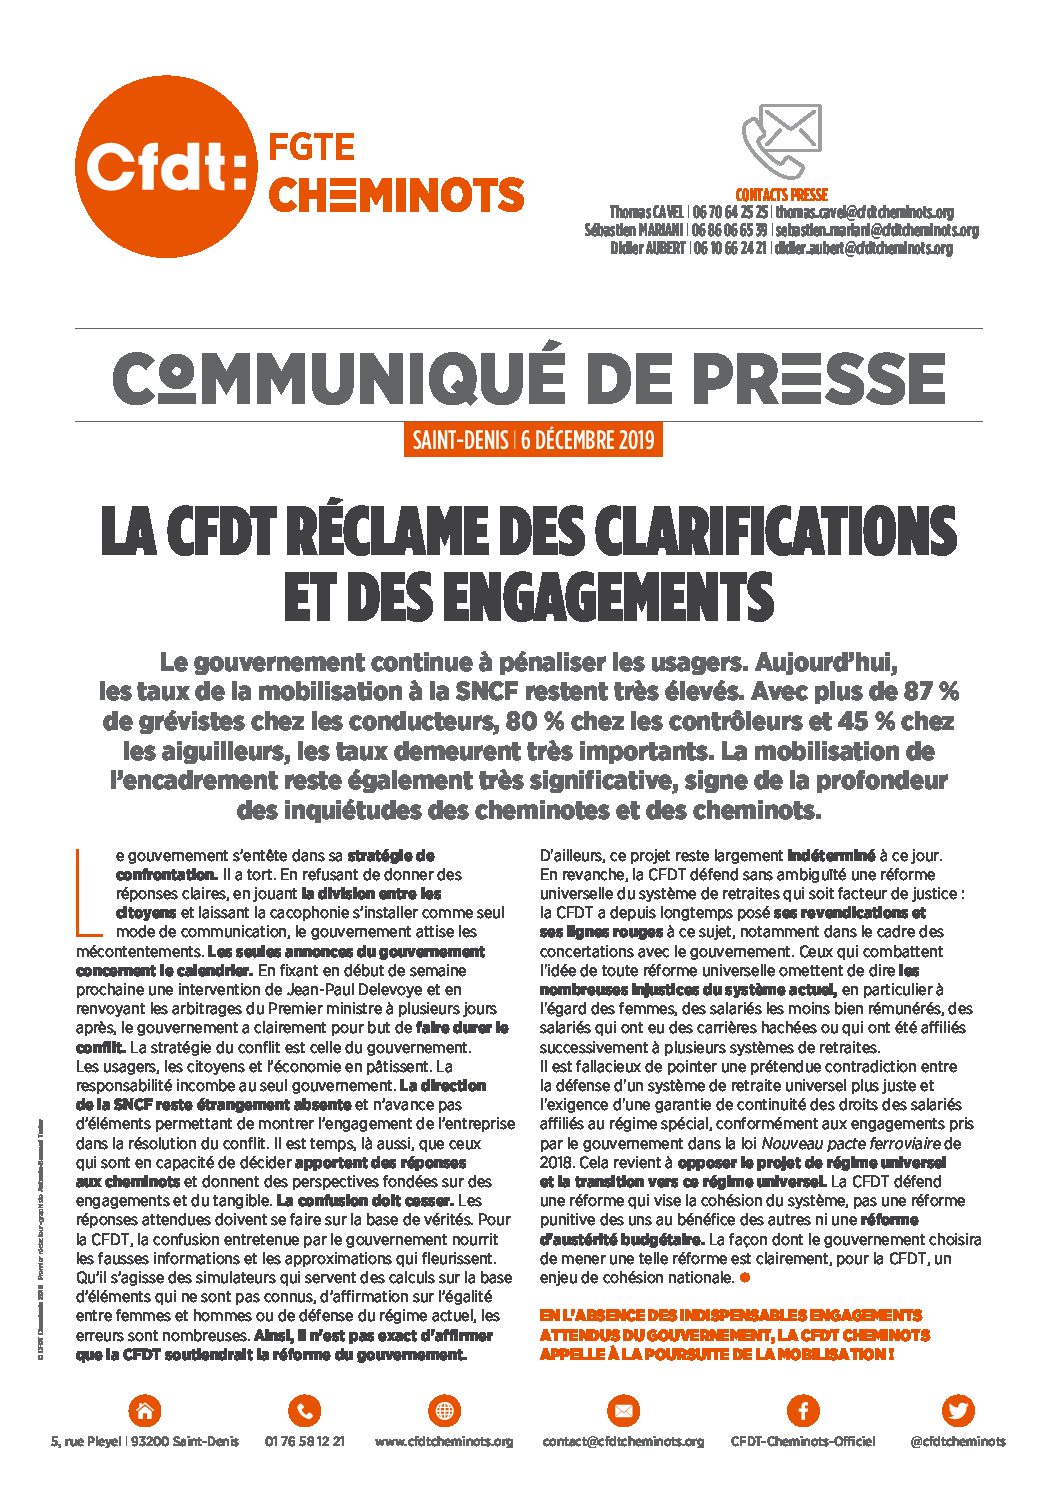 La CFDT réclame des clarifications et des engagements